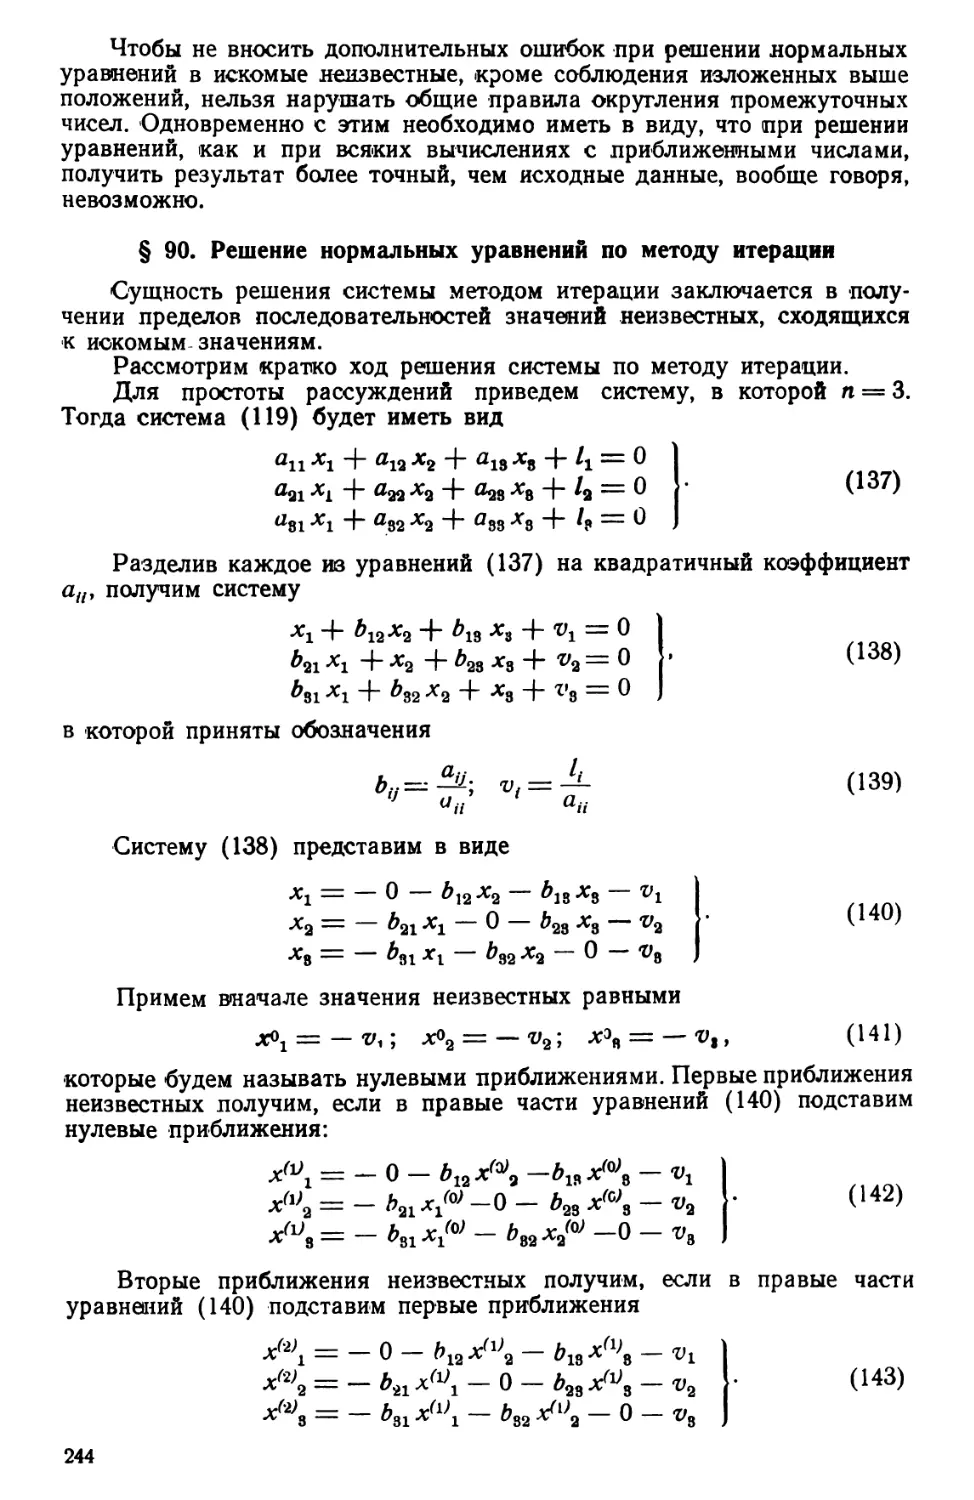 § 90. Решение нормальных уравнений по методу итерации